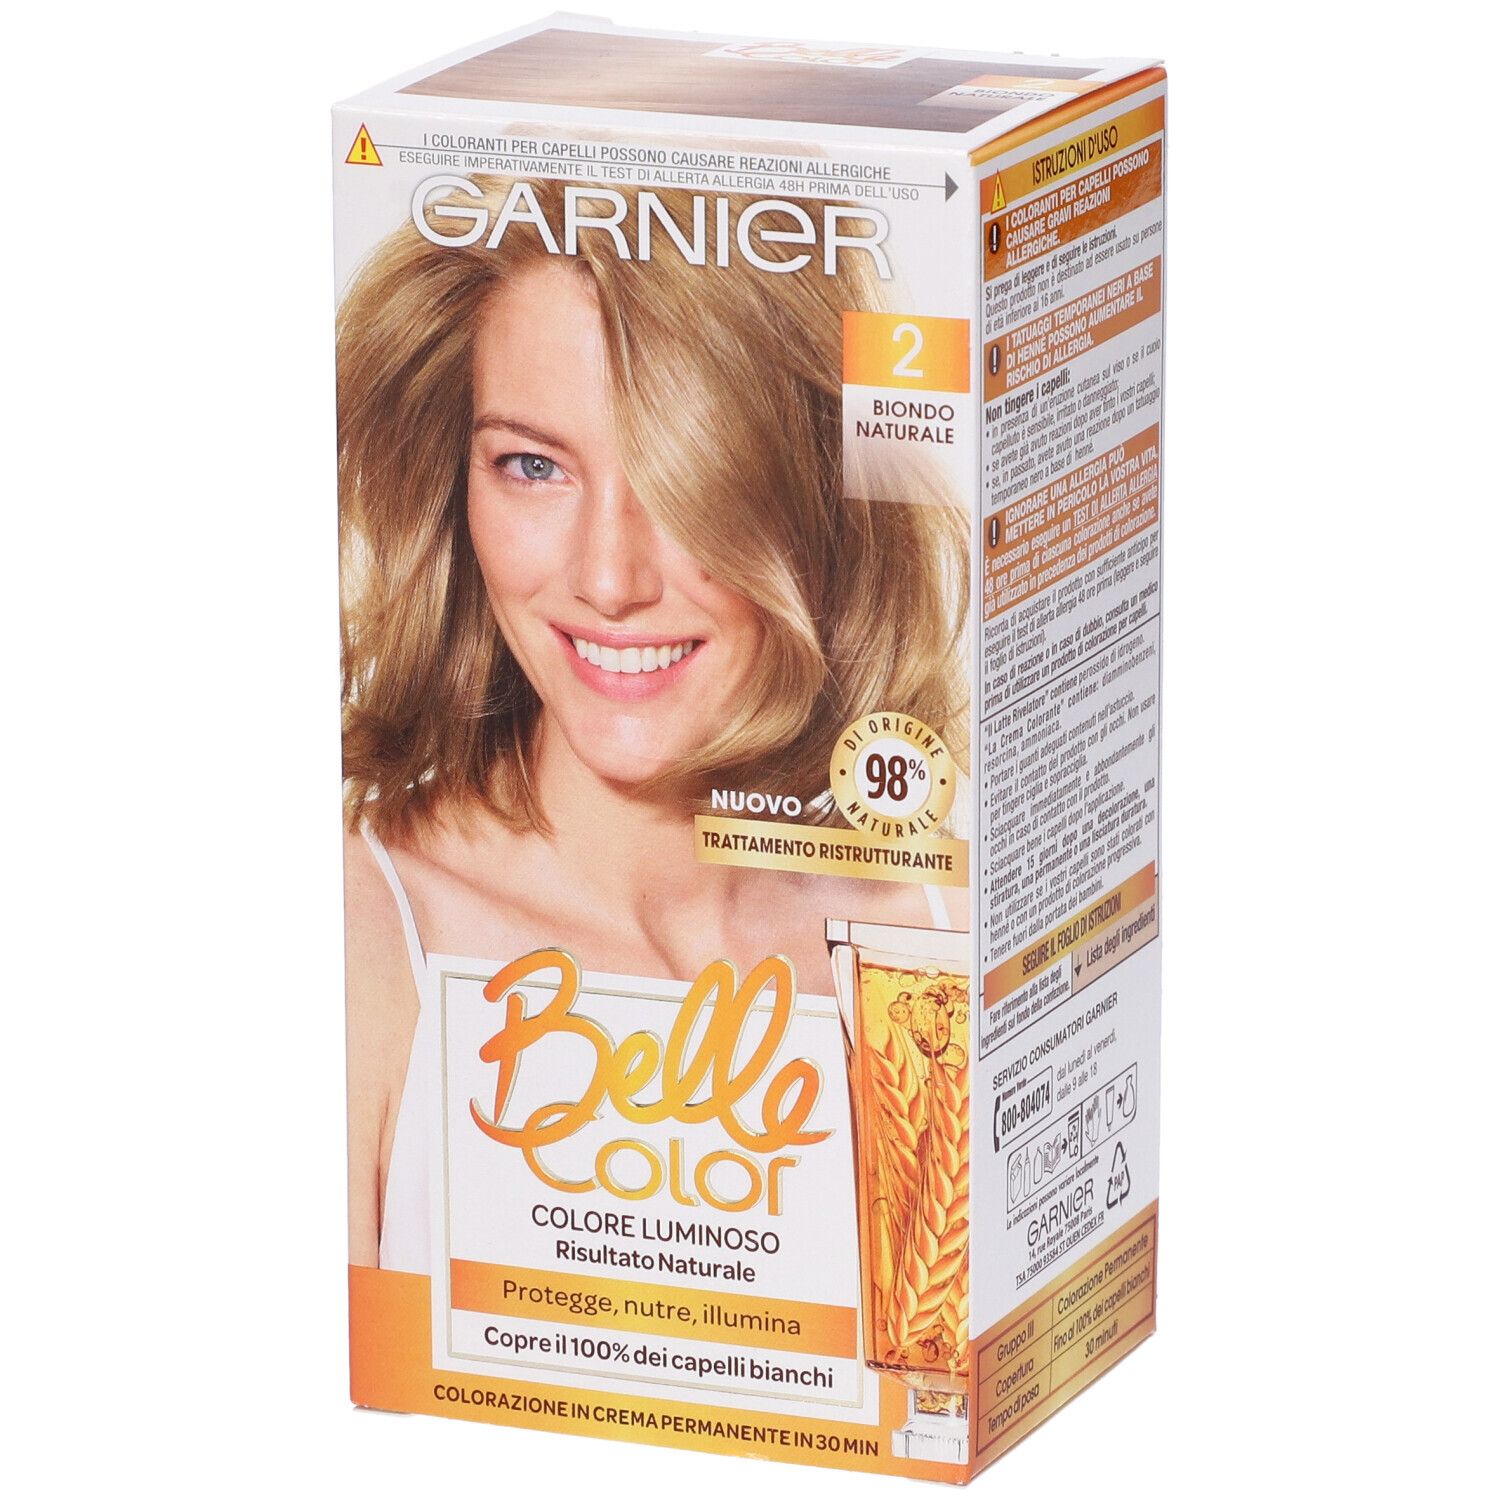 Image of Garnier Tinta Capelli Belle Color, Colore Luminoso e Riflessi Naturali, Copre il 100% dei capelli bianchi, Biondo Naturale